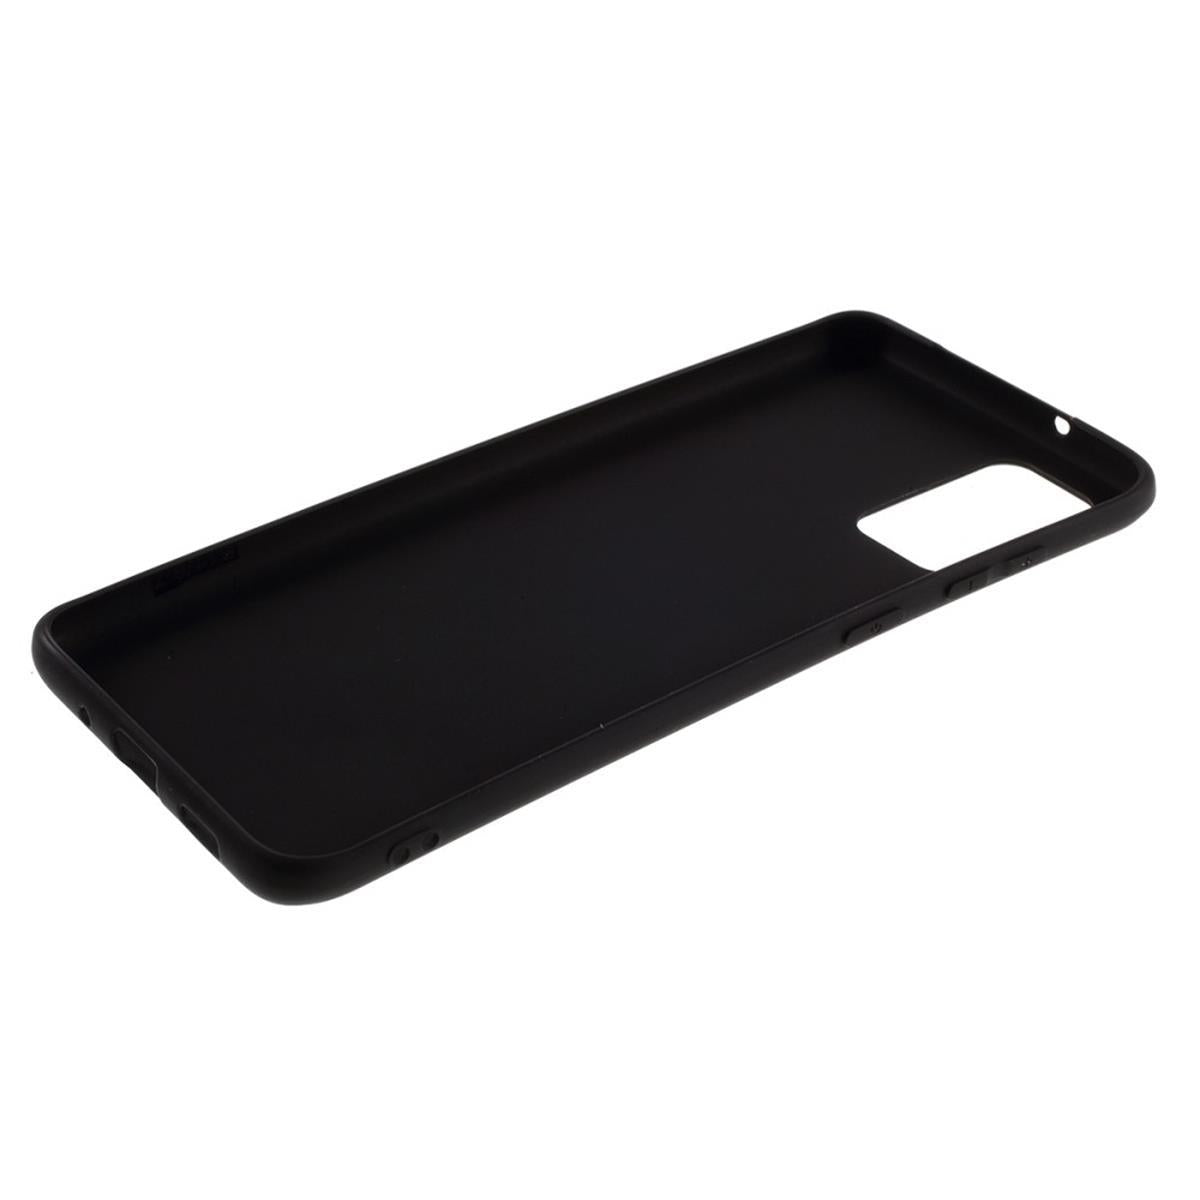 Hülle für Samsung Galaxy S10 Lite Handyhülle Silikon Case Cover Matt Schwarz